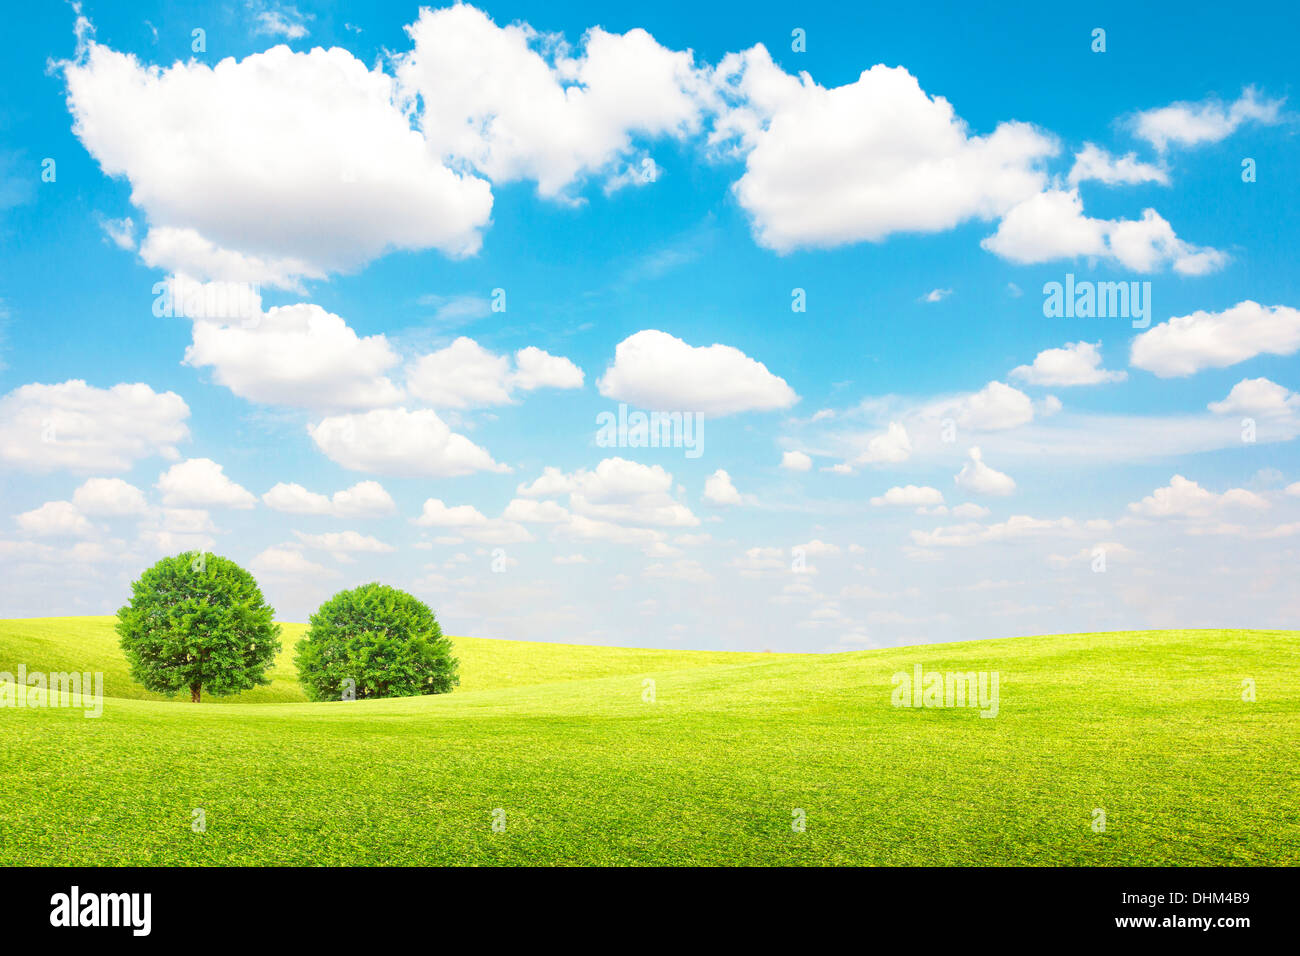 Champ vert et arbre avec ciel bleu et nuages Banque D'Images